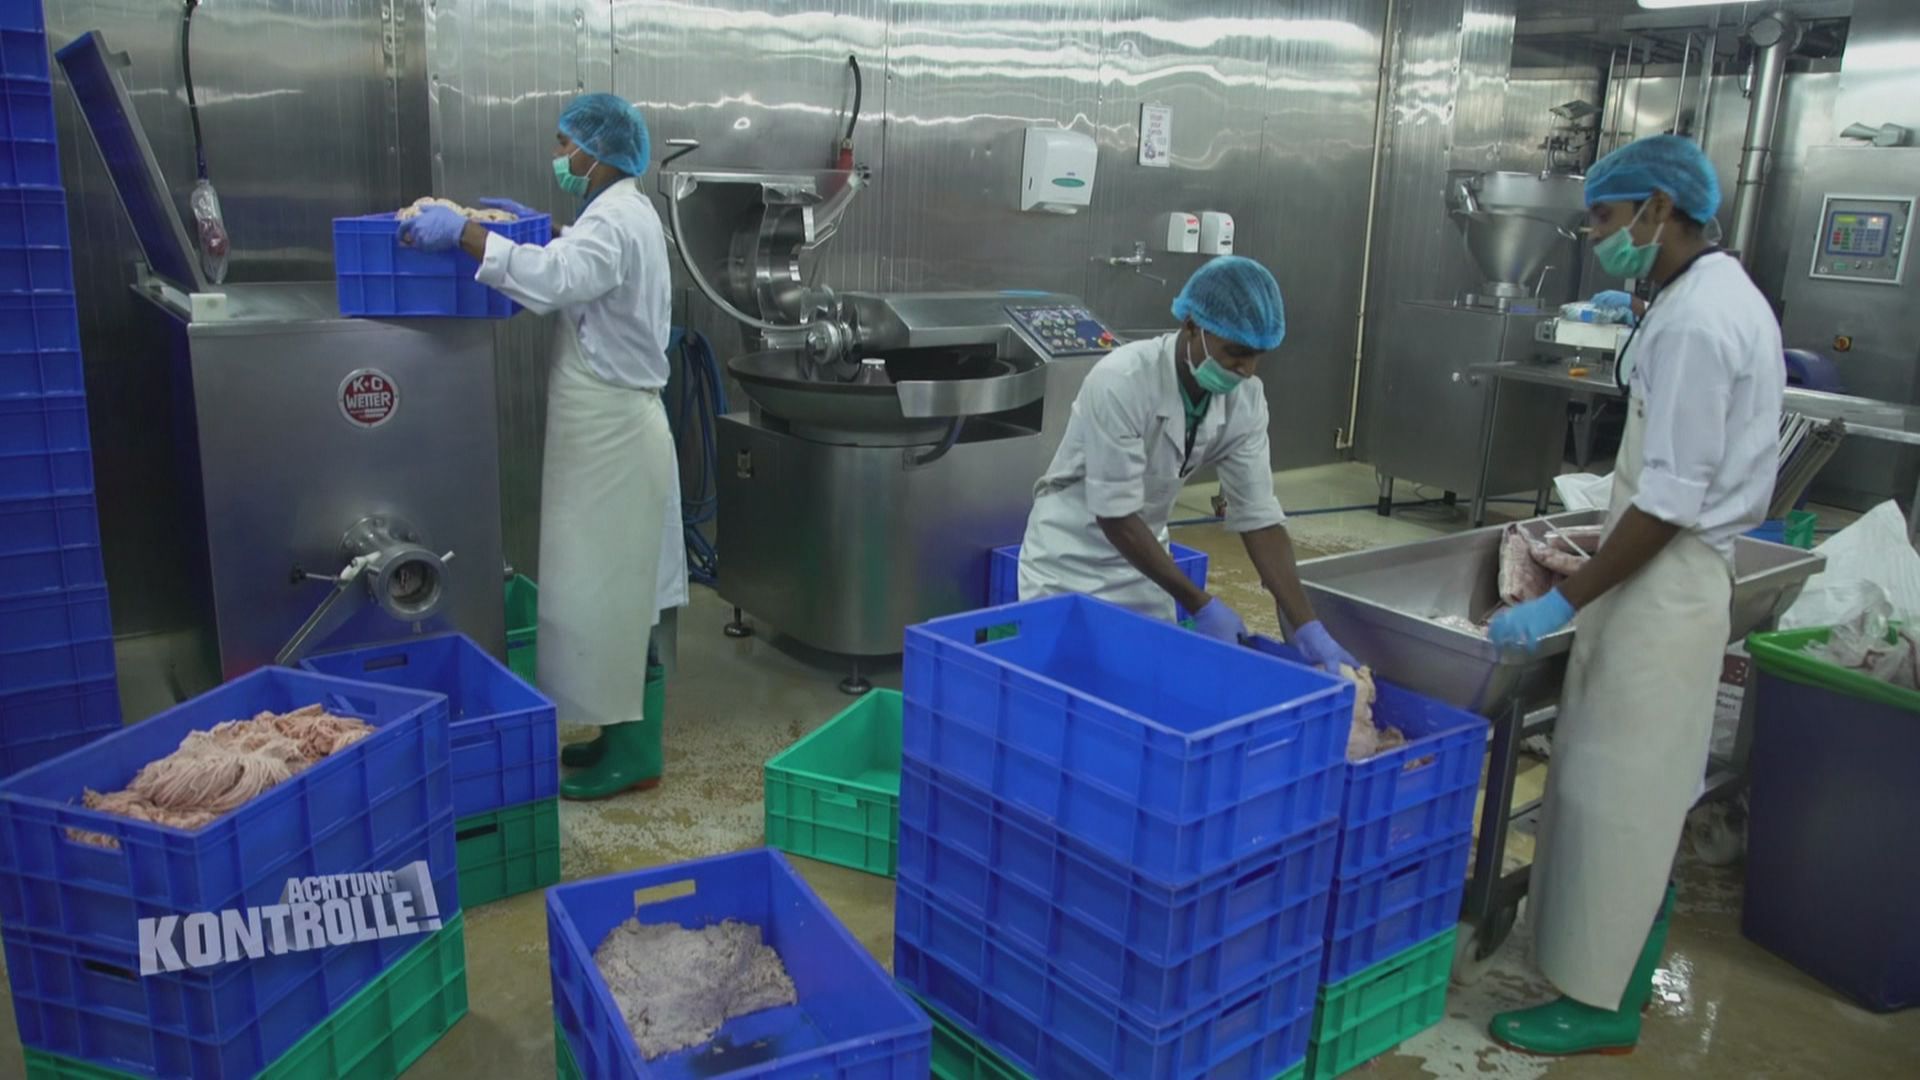 Thema u. a.: Mission Hygiene - Fleischfabrik in Indien